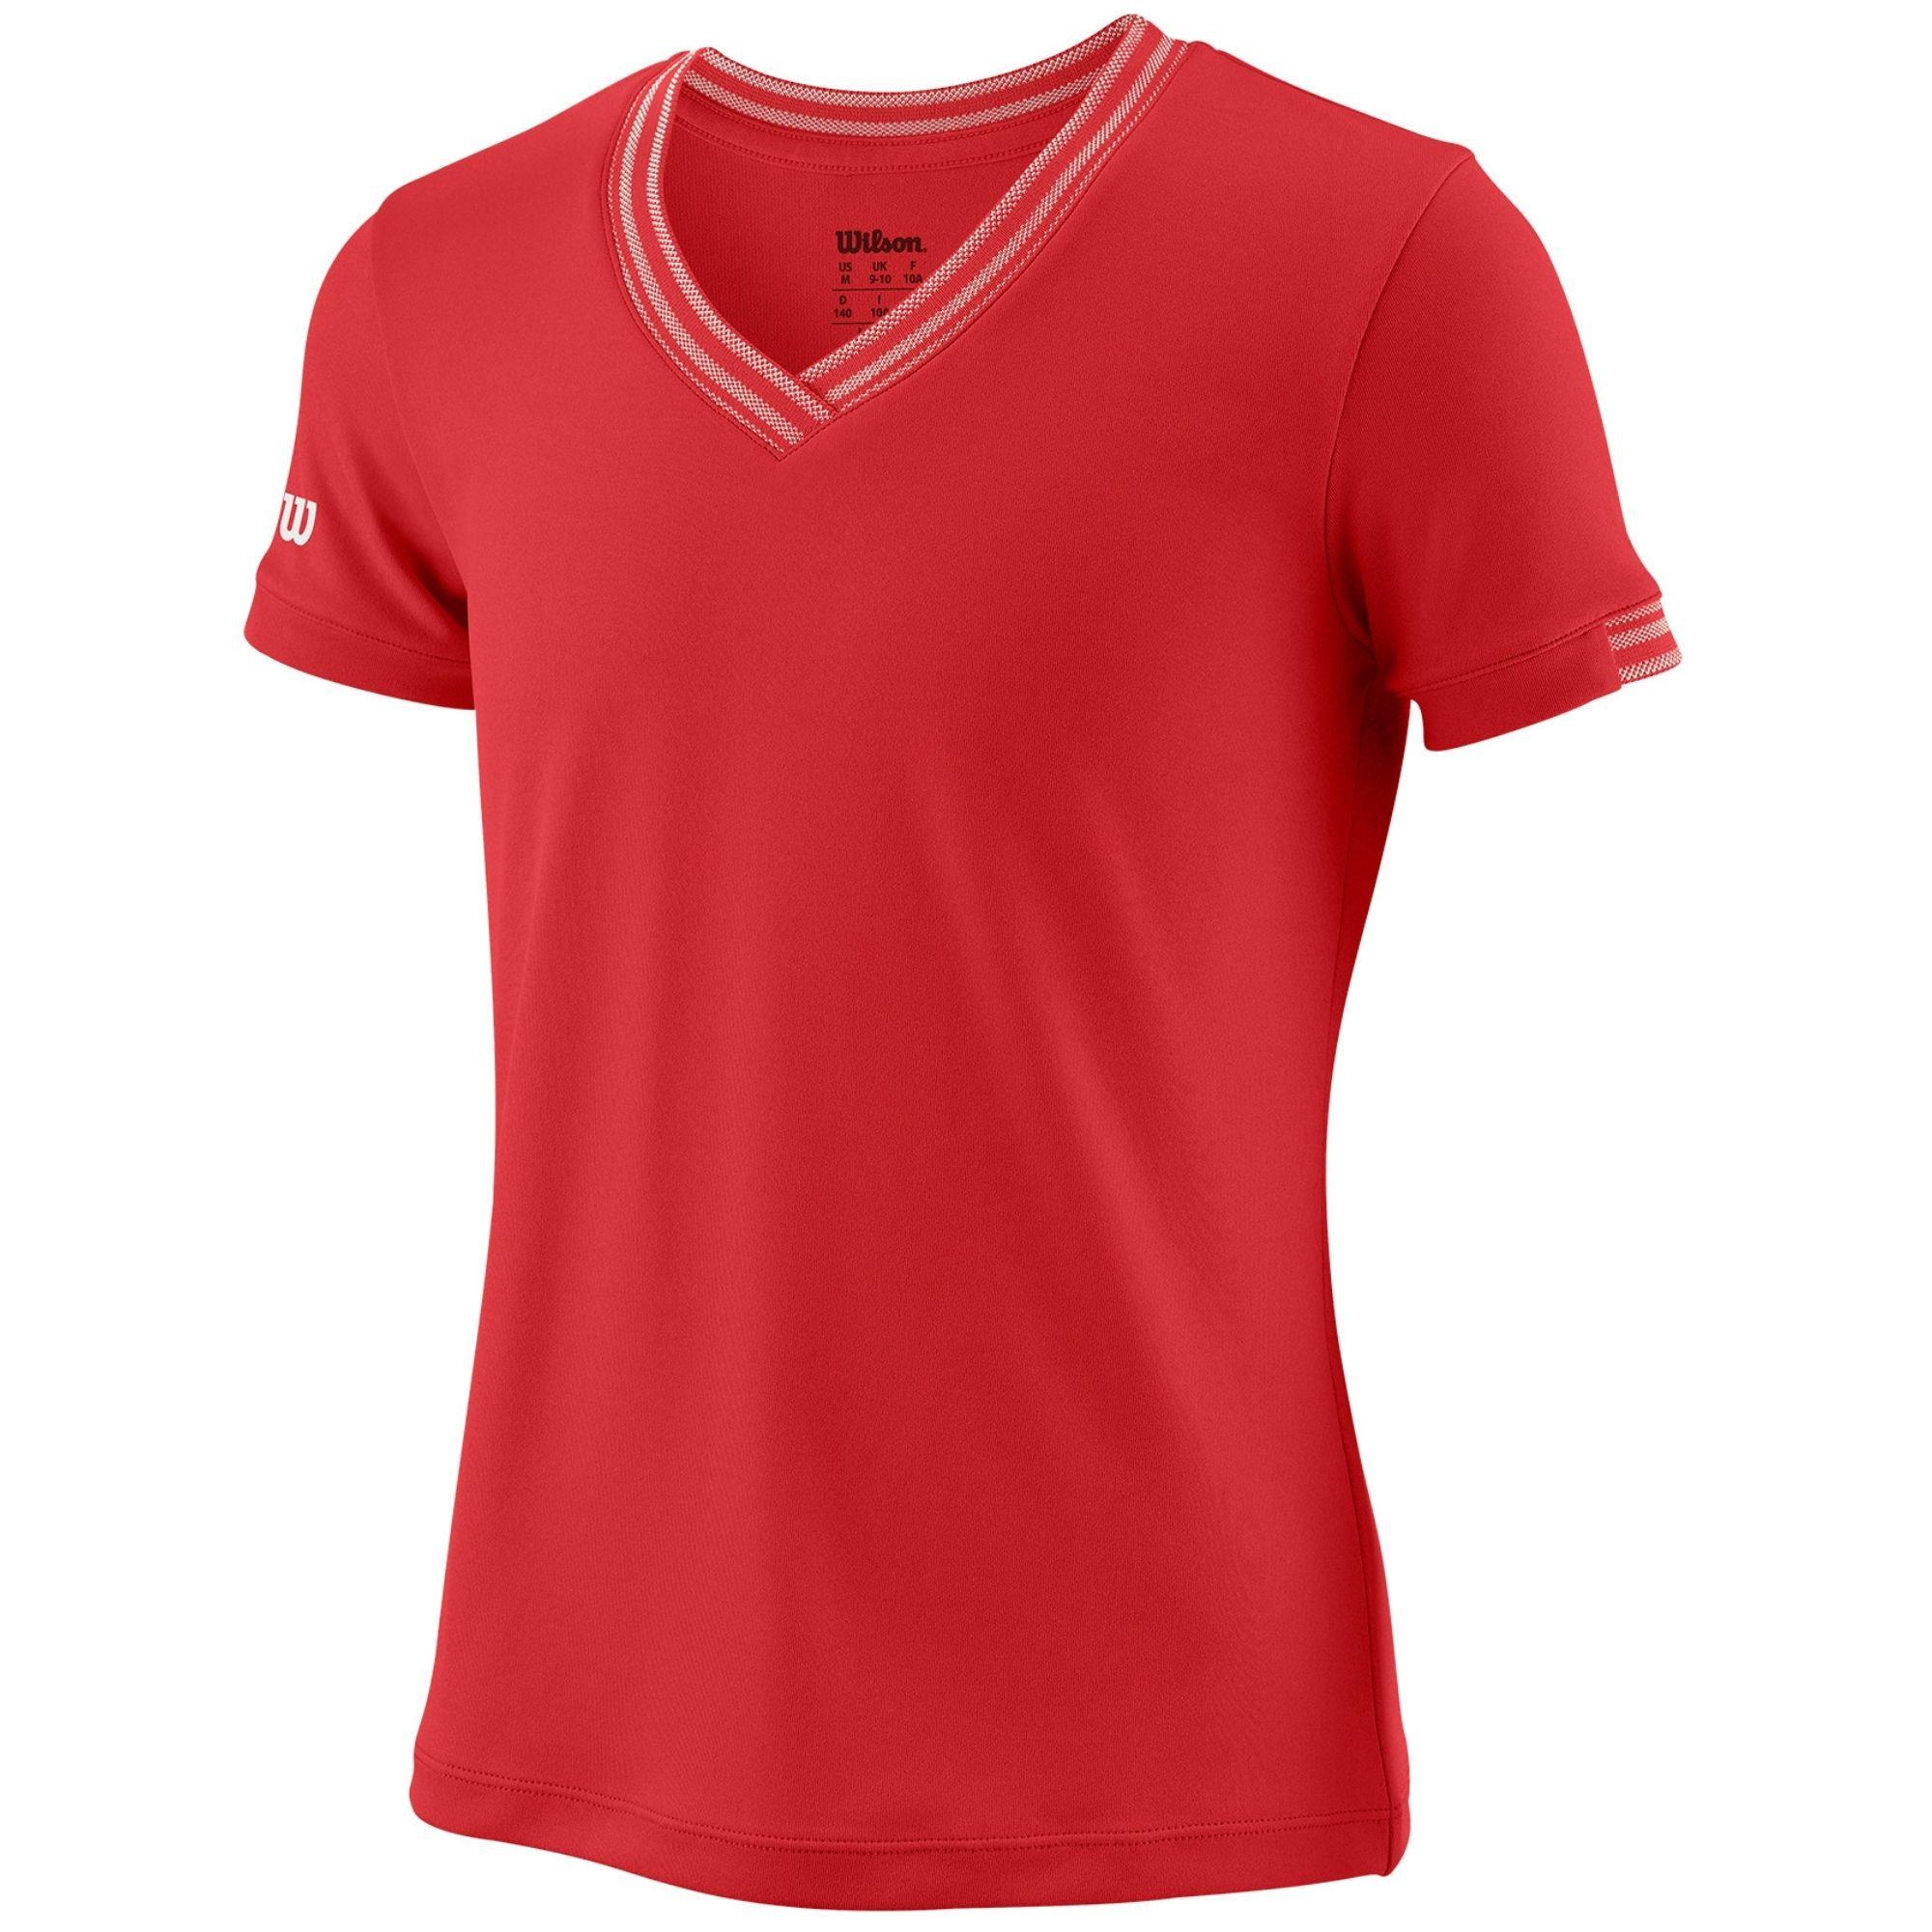 Camiseta Wilson Team Junior roja 